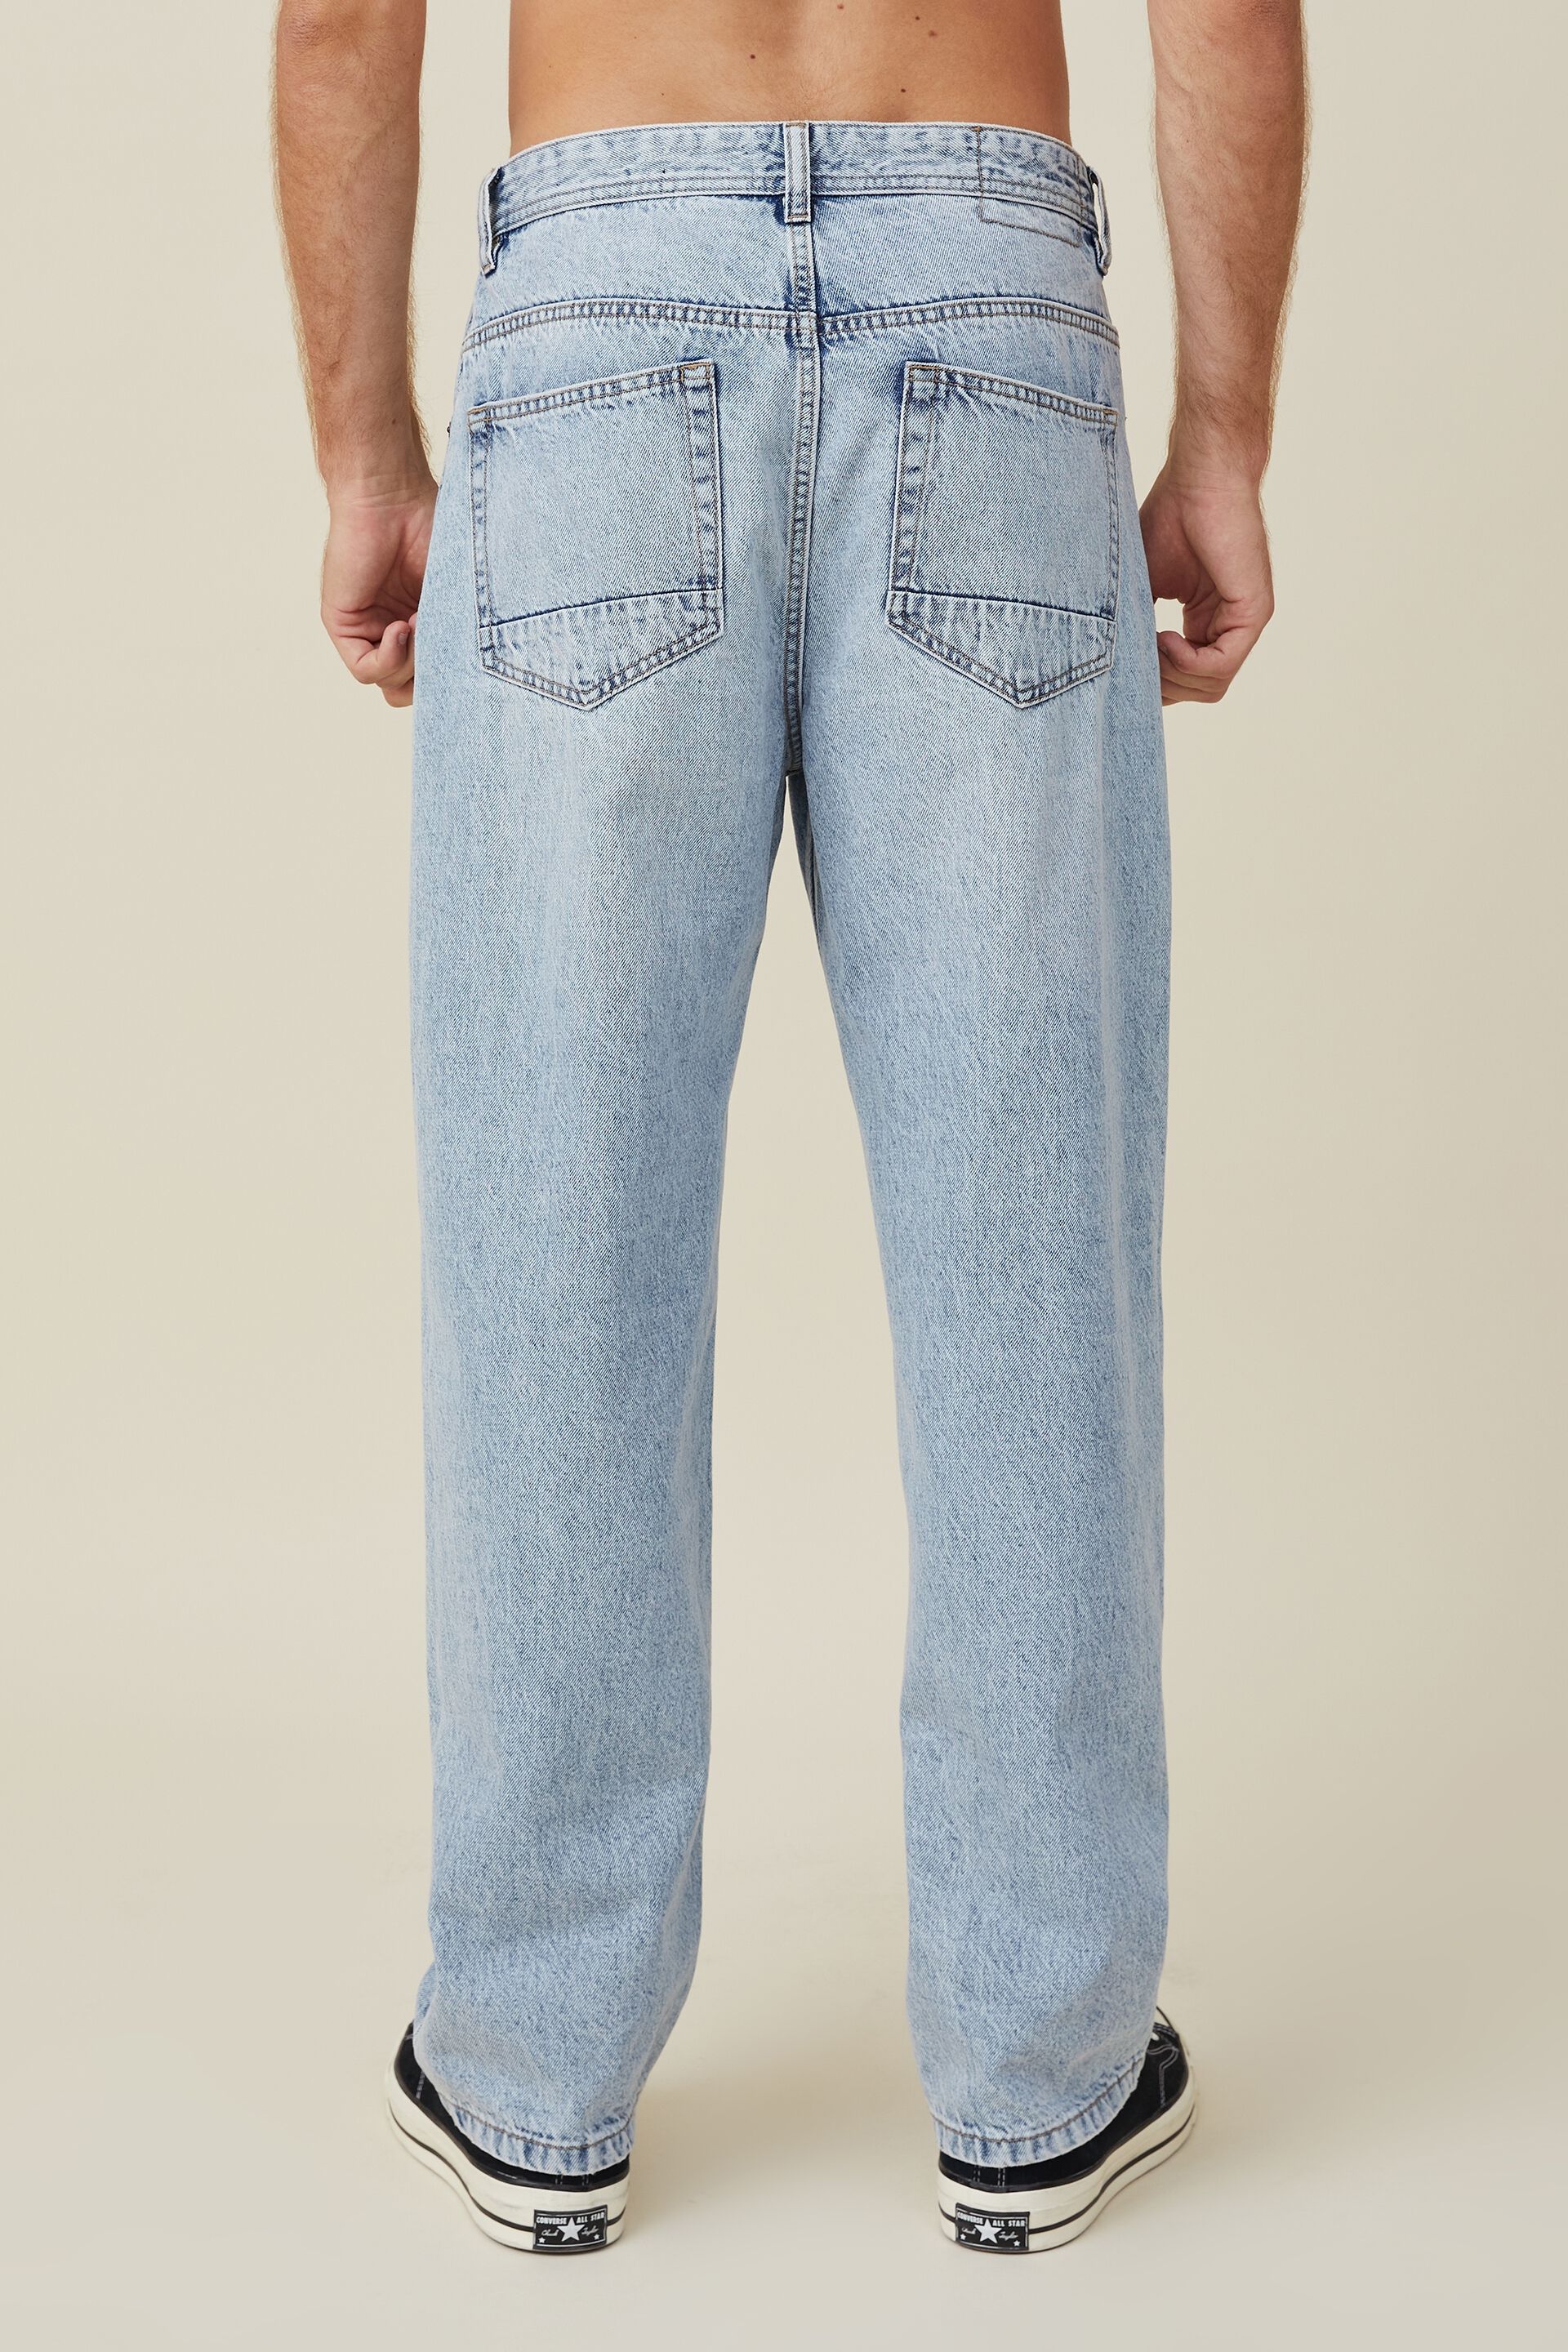 Women's Beige Jeans & Denim | Nordstrom